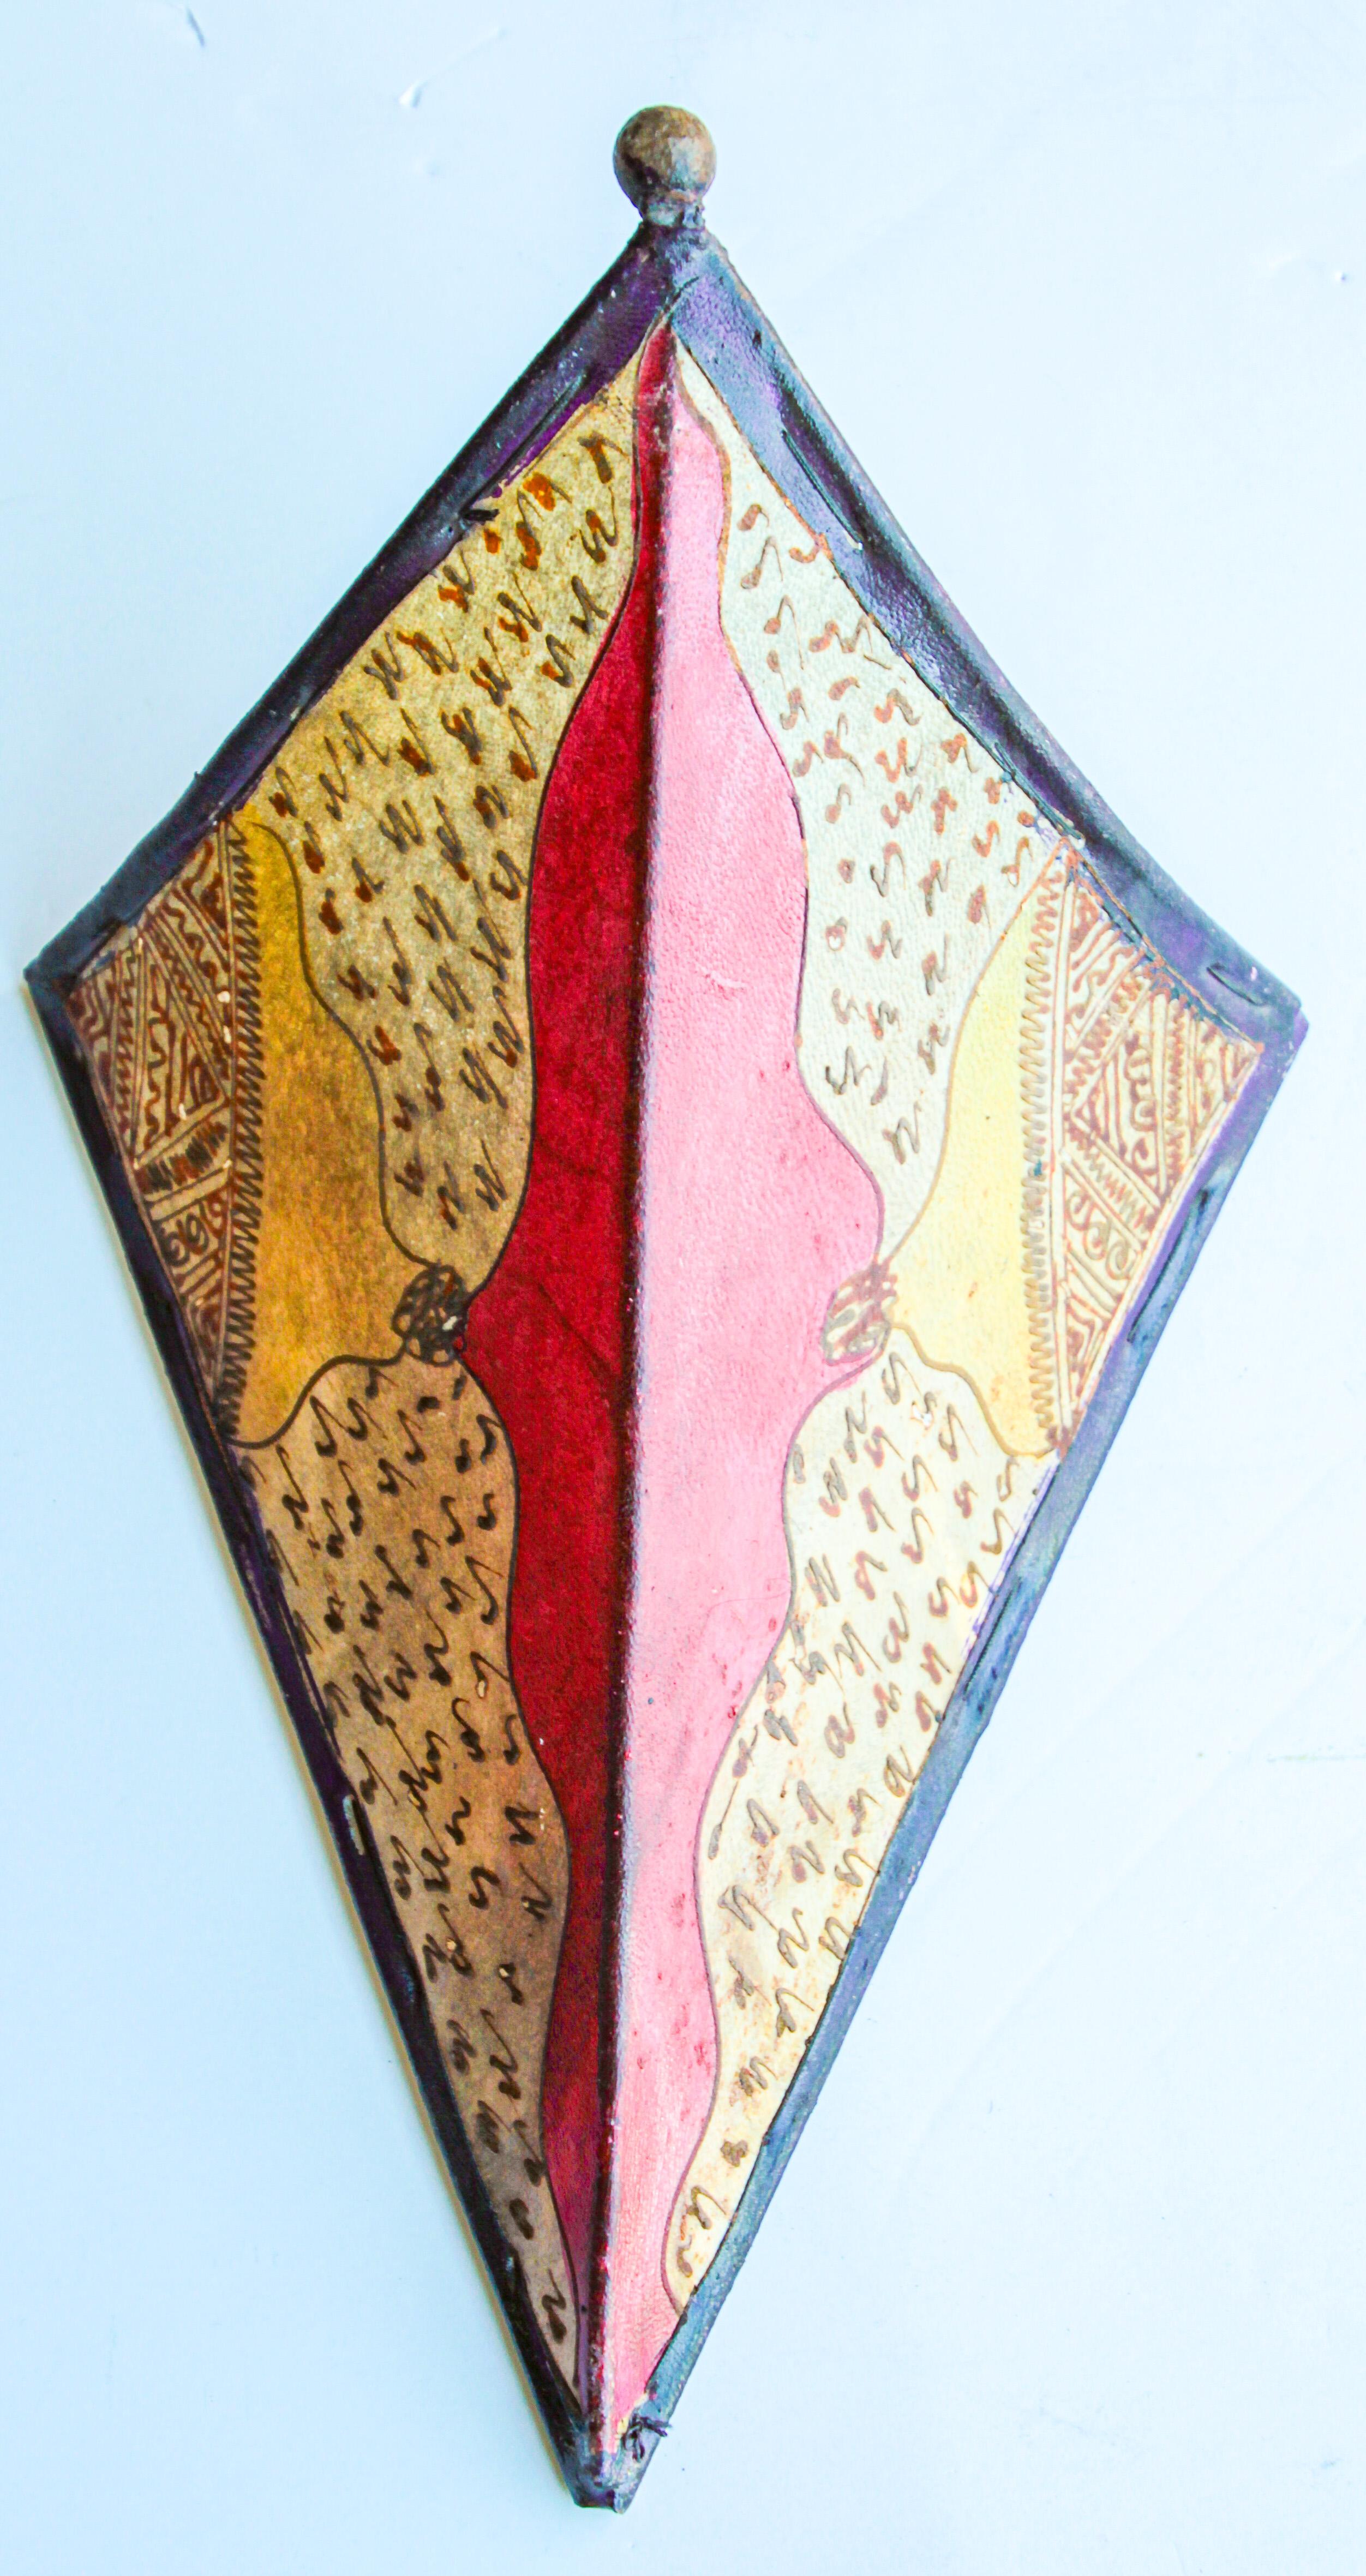 Afrikanische Stammeskunst Pergament Wandleuchte mit einer großen Dreiecksform aus Leder auf Eisen genäht und handbemalt Oberfläche.
Diese Kunstwerke können als Lampenschirm für die Wand verwendet werden.
Der mit Pergament überzogene Eisenrahmen,